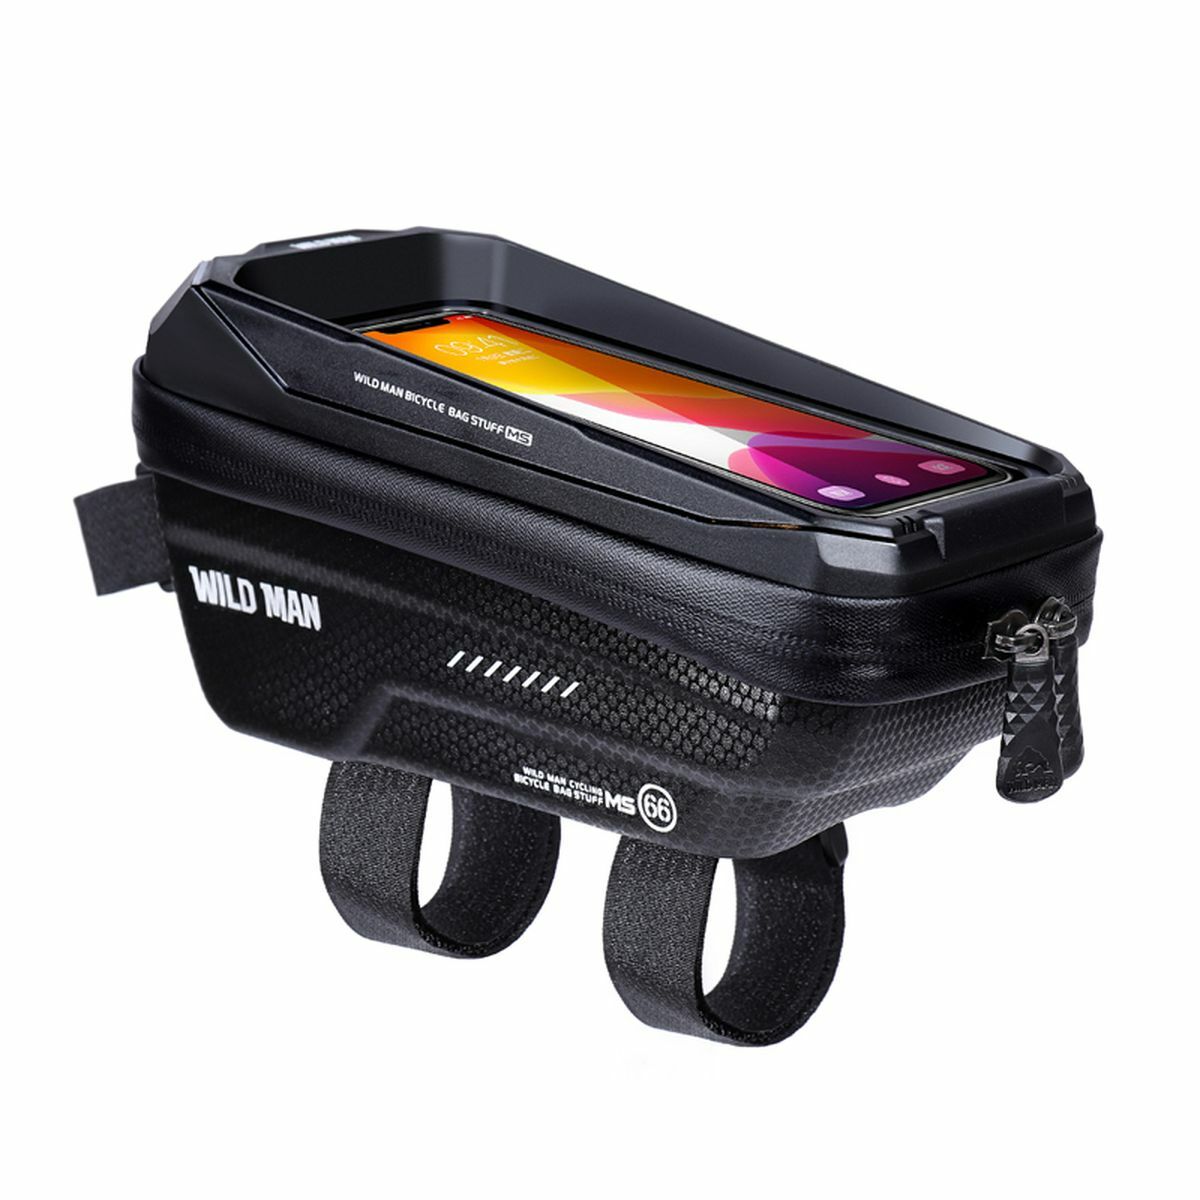 Kép 2/9 - WILDMAN Bicycle Bag MS66 vázra szerelhető, vízálló, merevfalú kerékpáros táska telefontartóval, 4.7-6.7", 1L, fekete WILDMAN-MS66-1L